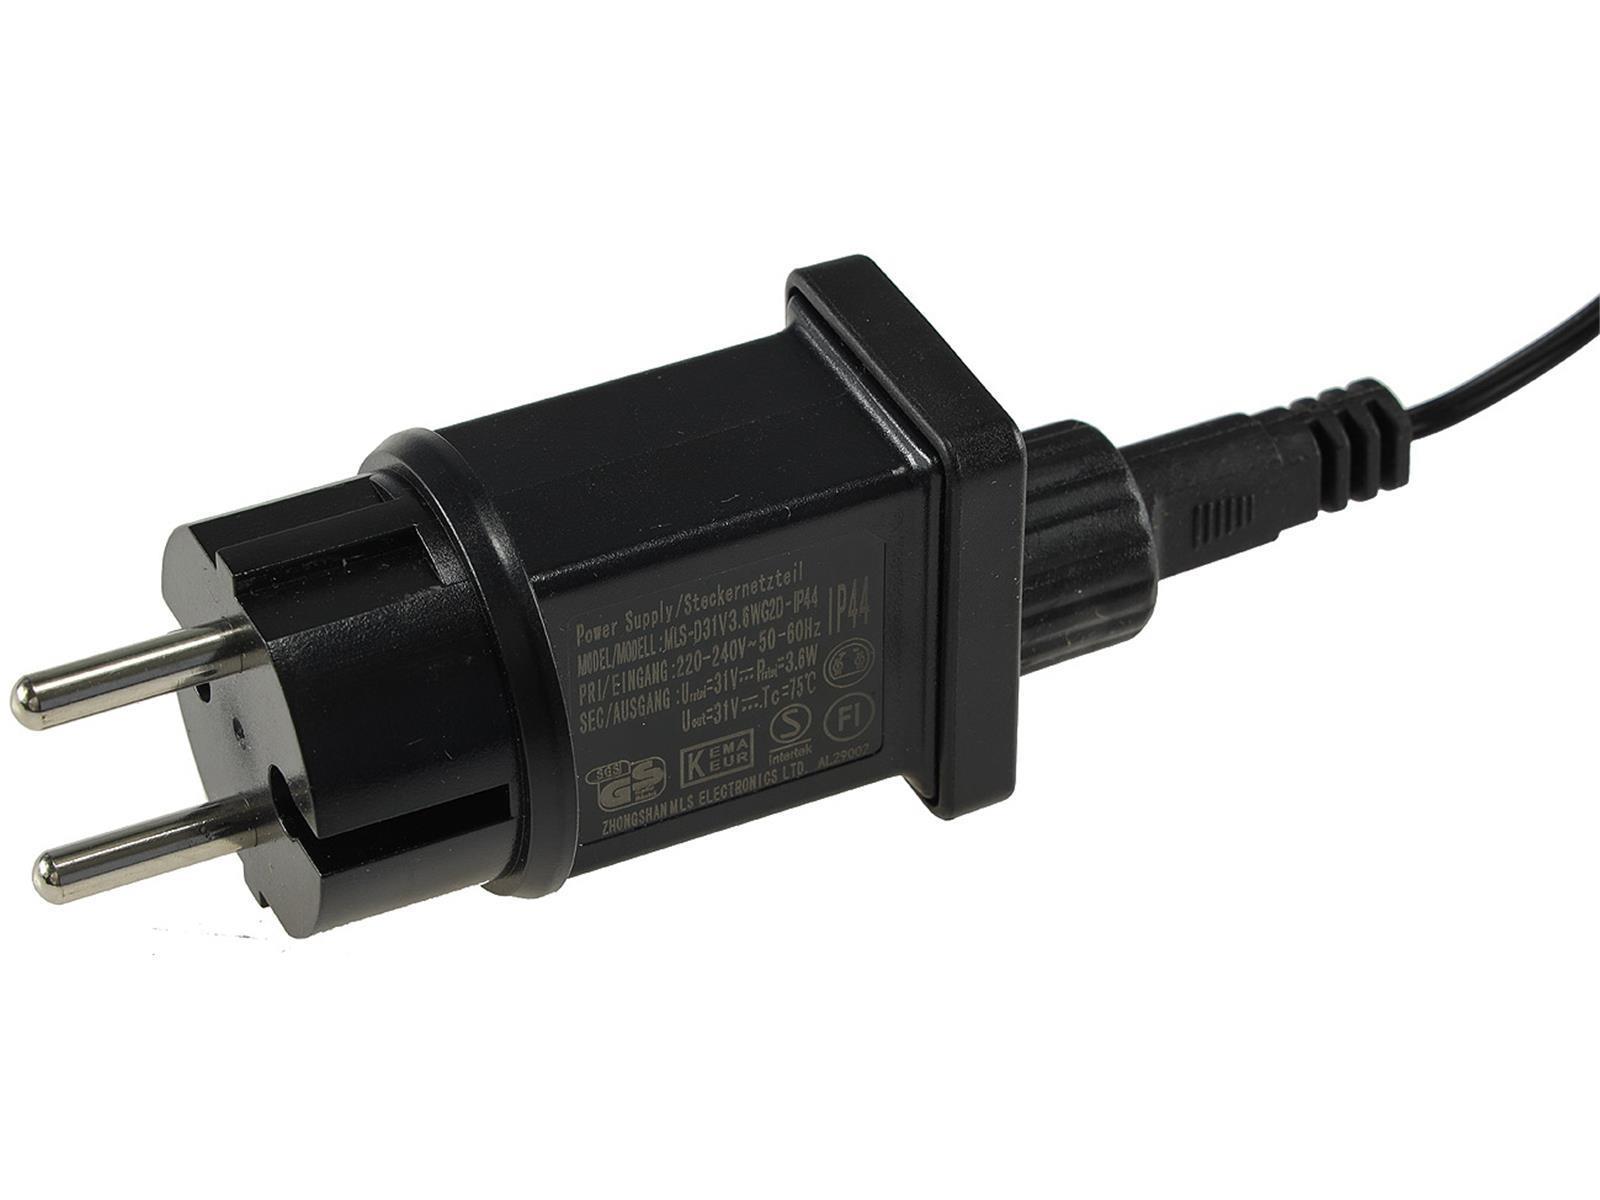 LED Aussen-Lichterkette "CT-ALK040" 4m warmweiß, Kabel schwarz, IP44, 40 LEDs